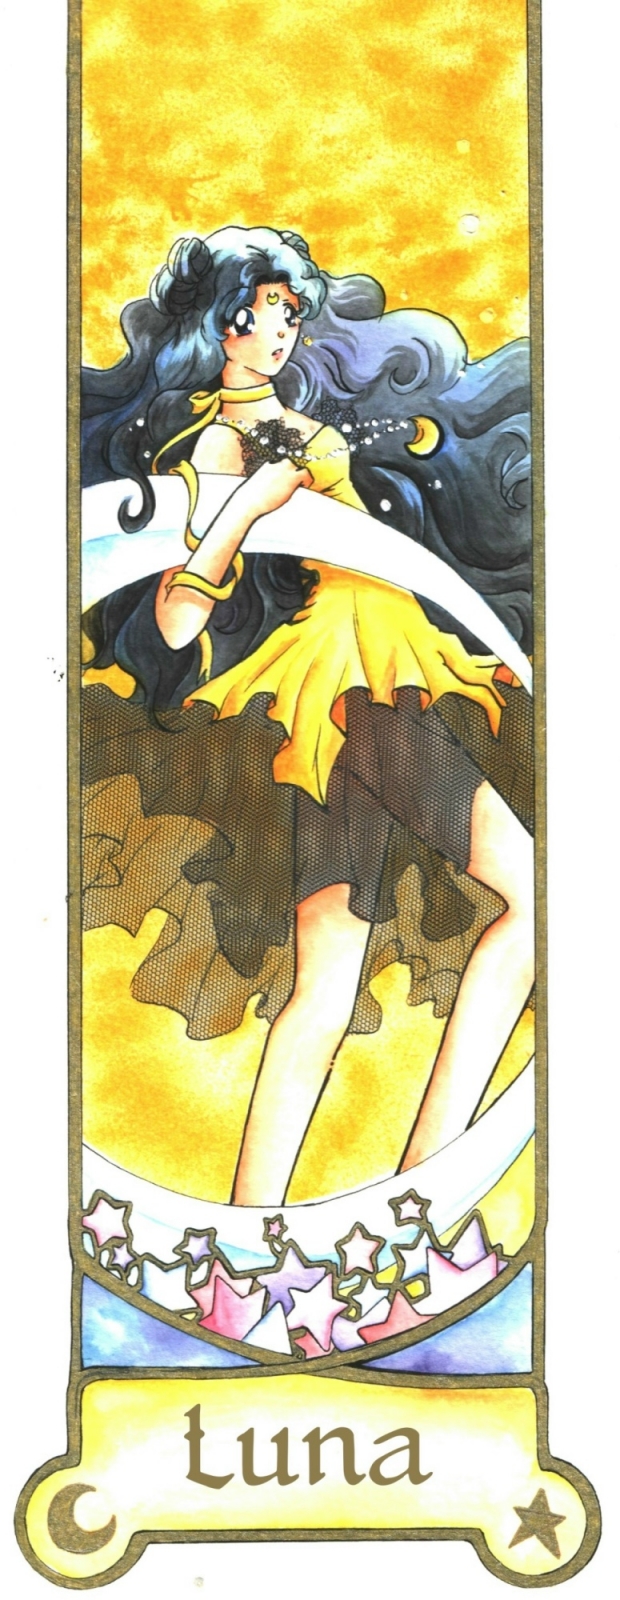 Luna - Sailor Moon